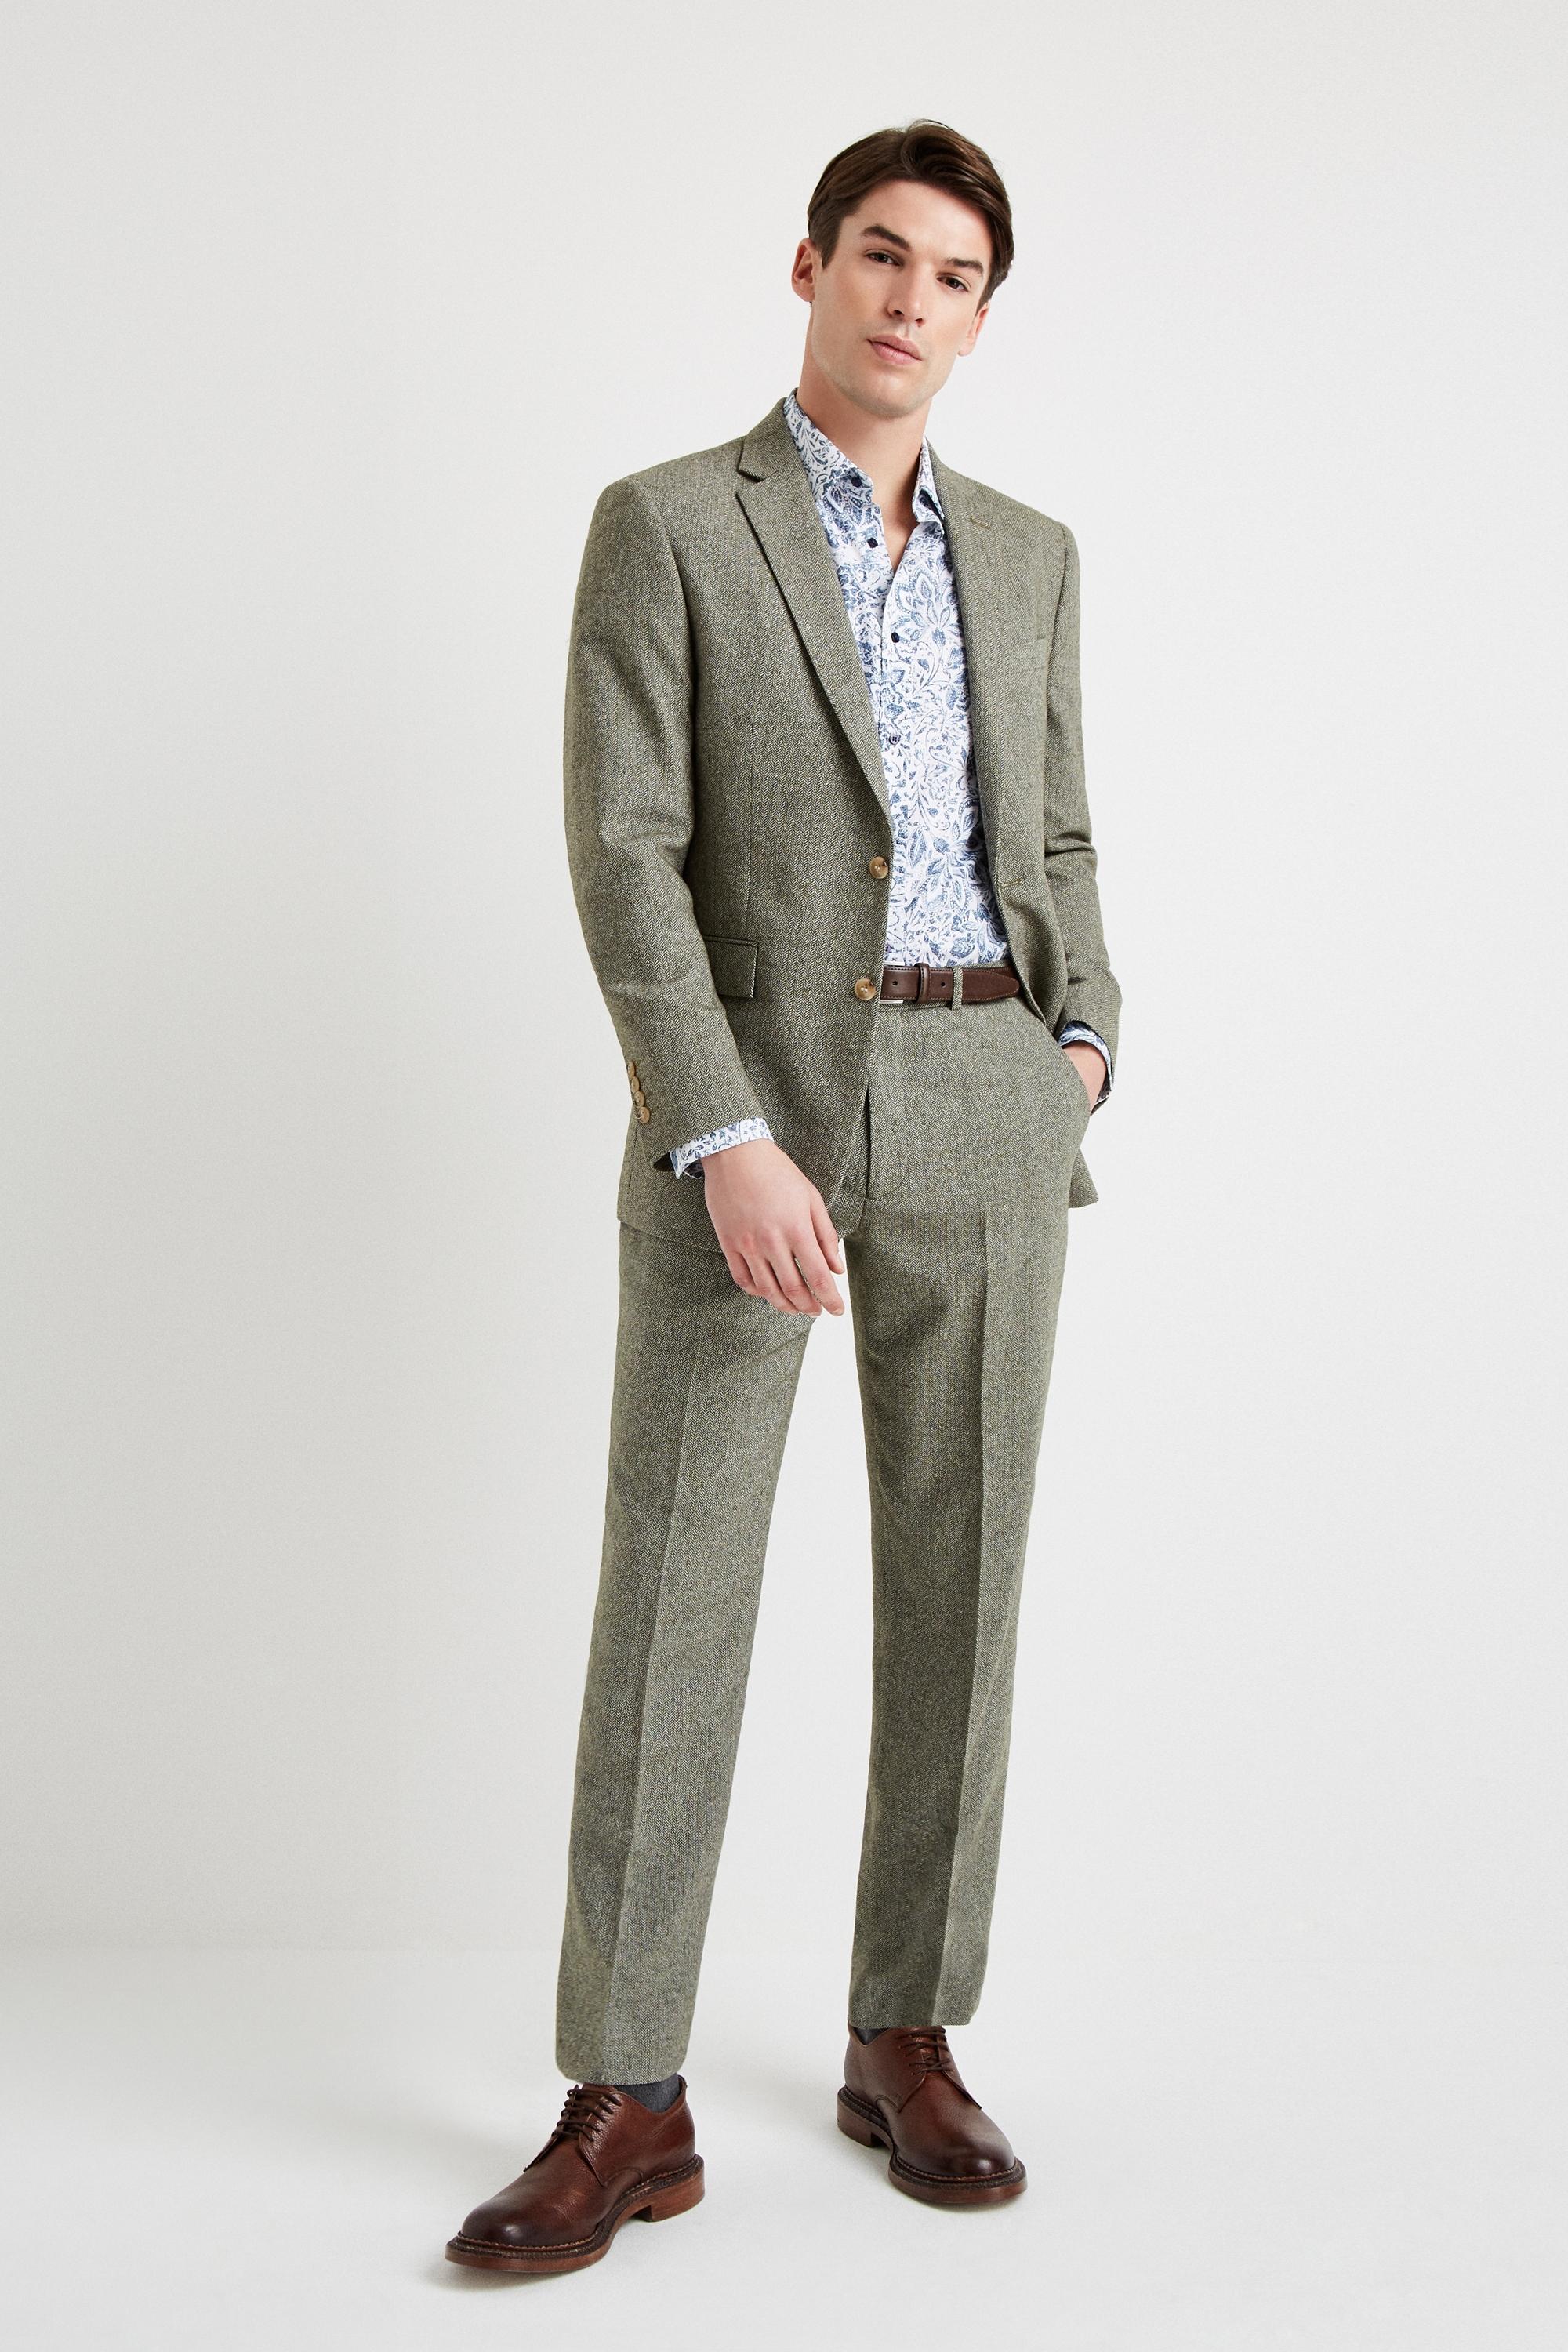 Moss London Regular Fit Sage Herringbone Tweed Jacket for Men - Lyst